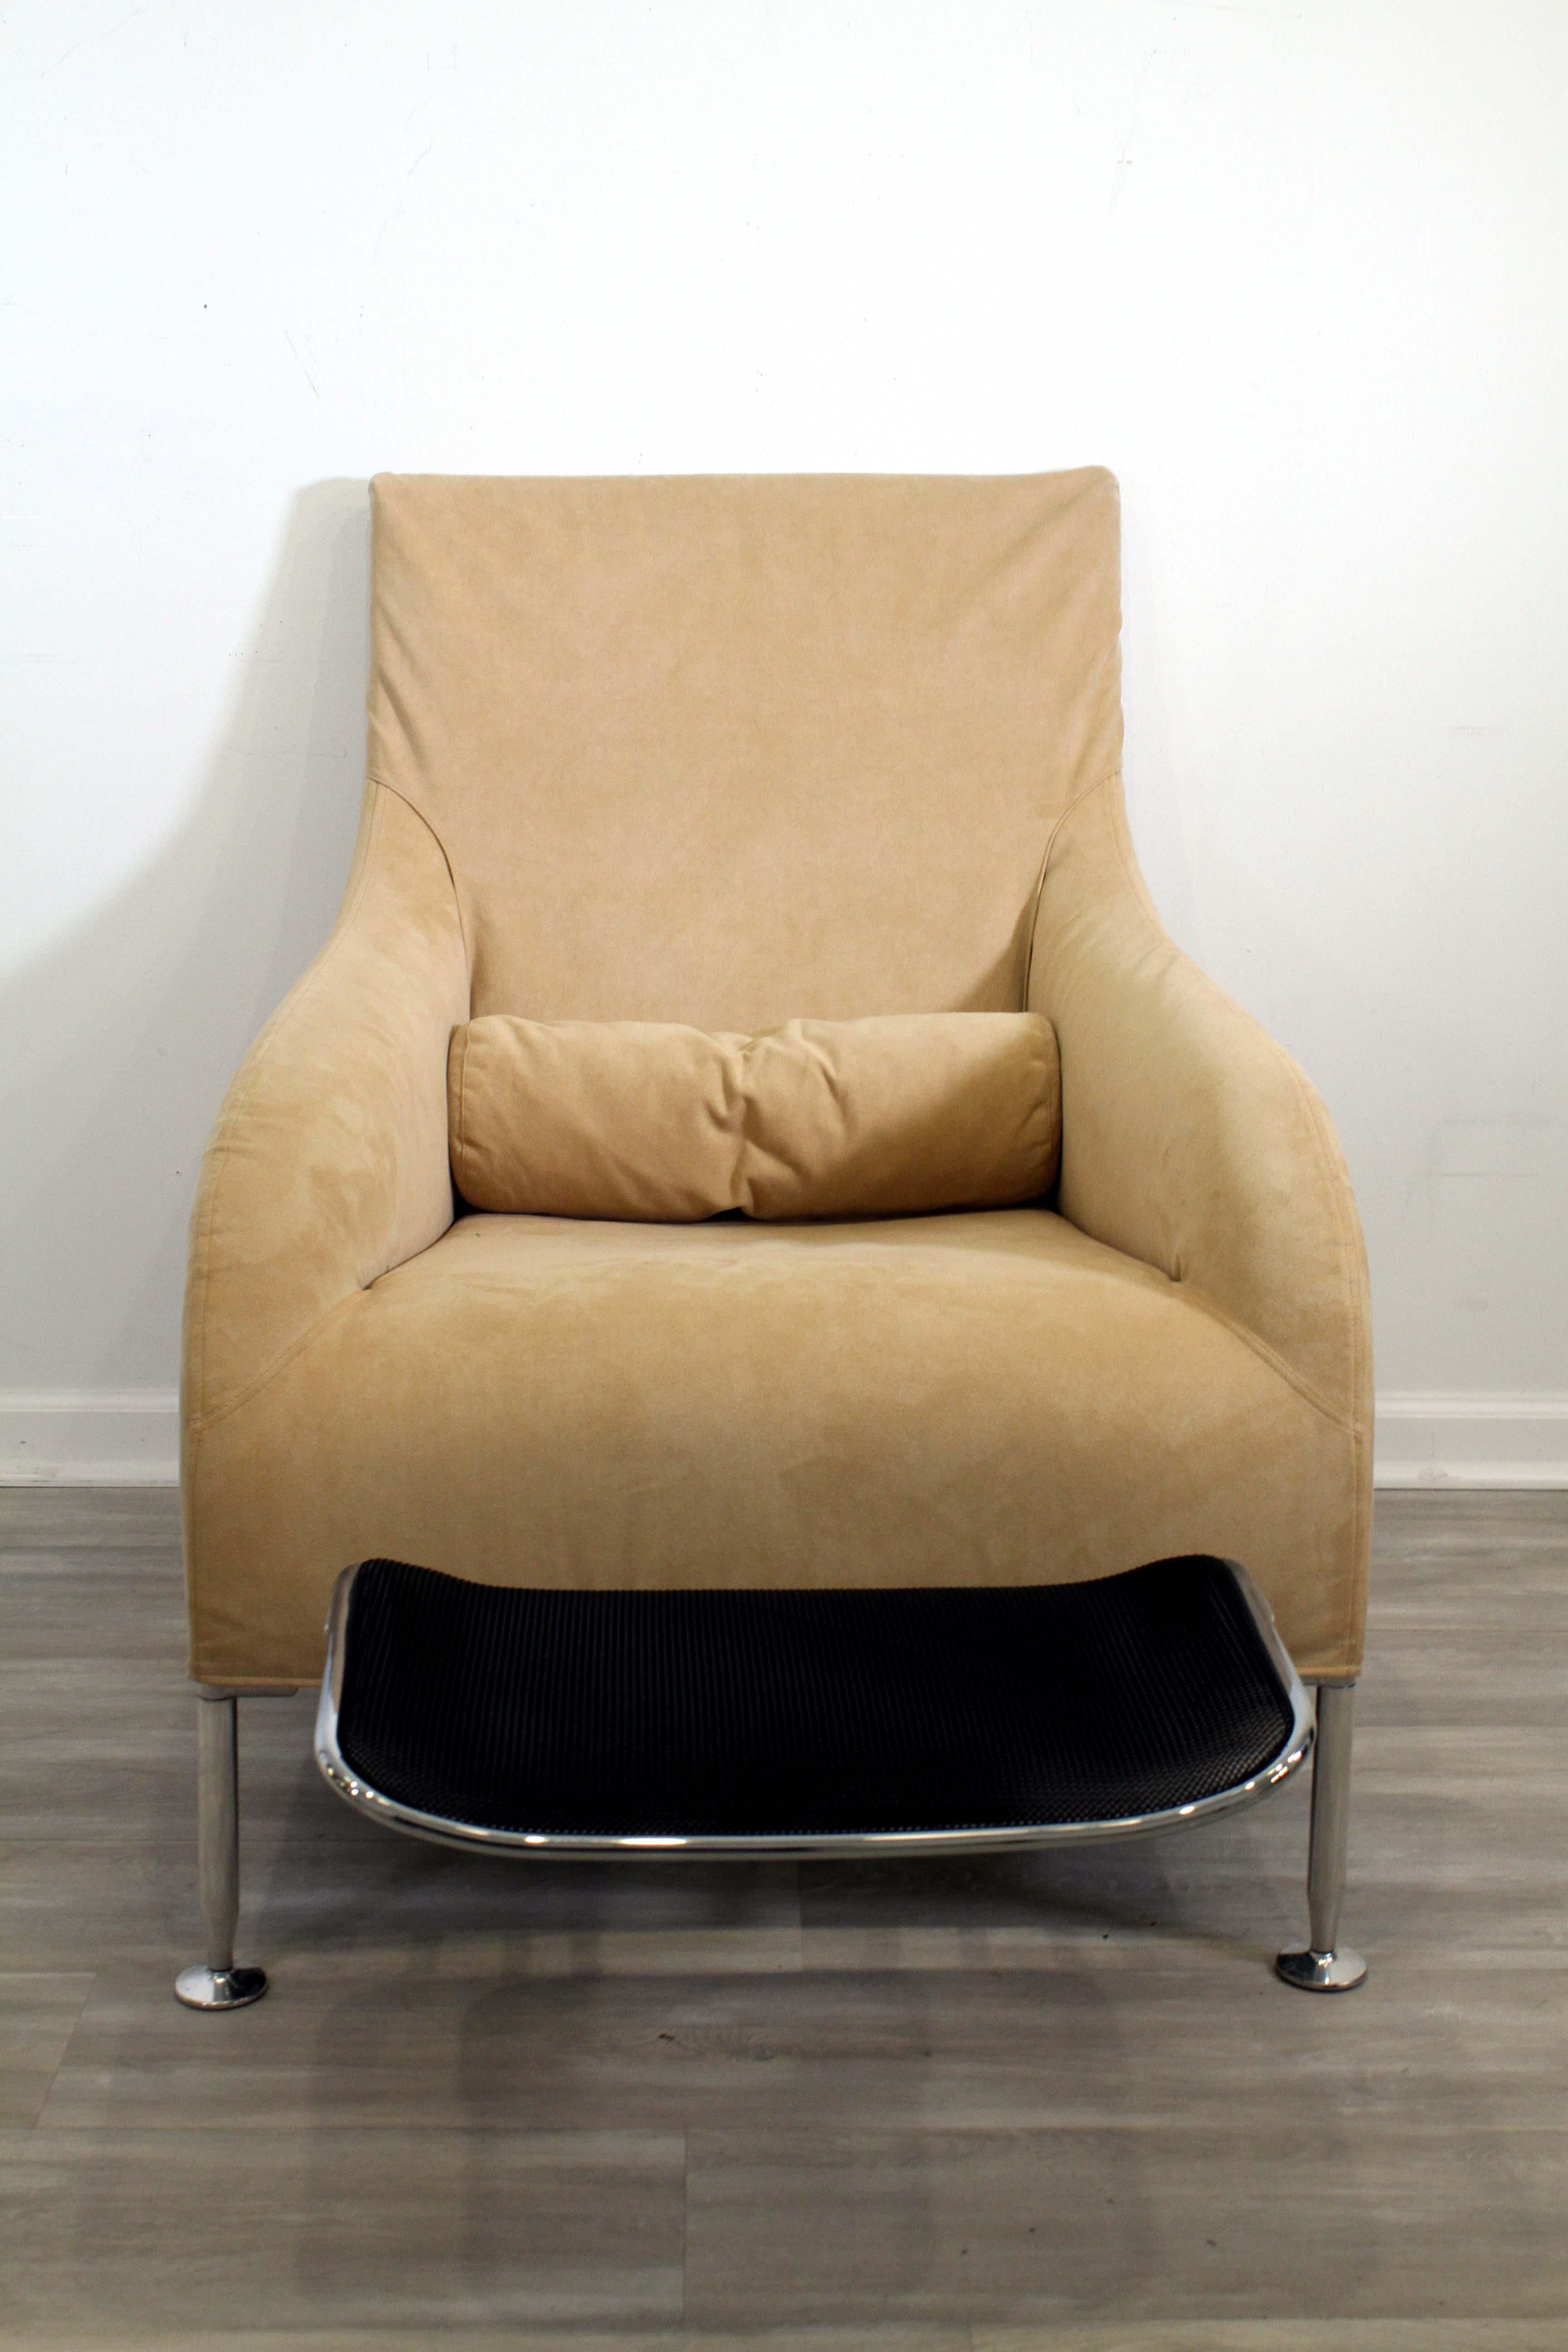 La chaise longue Maxalto florence par Antonio Citterio de B&B Italia avec repose-pieds en filet est l'ajout parfait à tout espace de vie moderne. Cette chaise élégante et raffinée est dotée d'un cadre en aluminium moulé et d'une assise et d'un